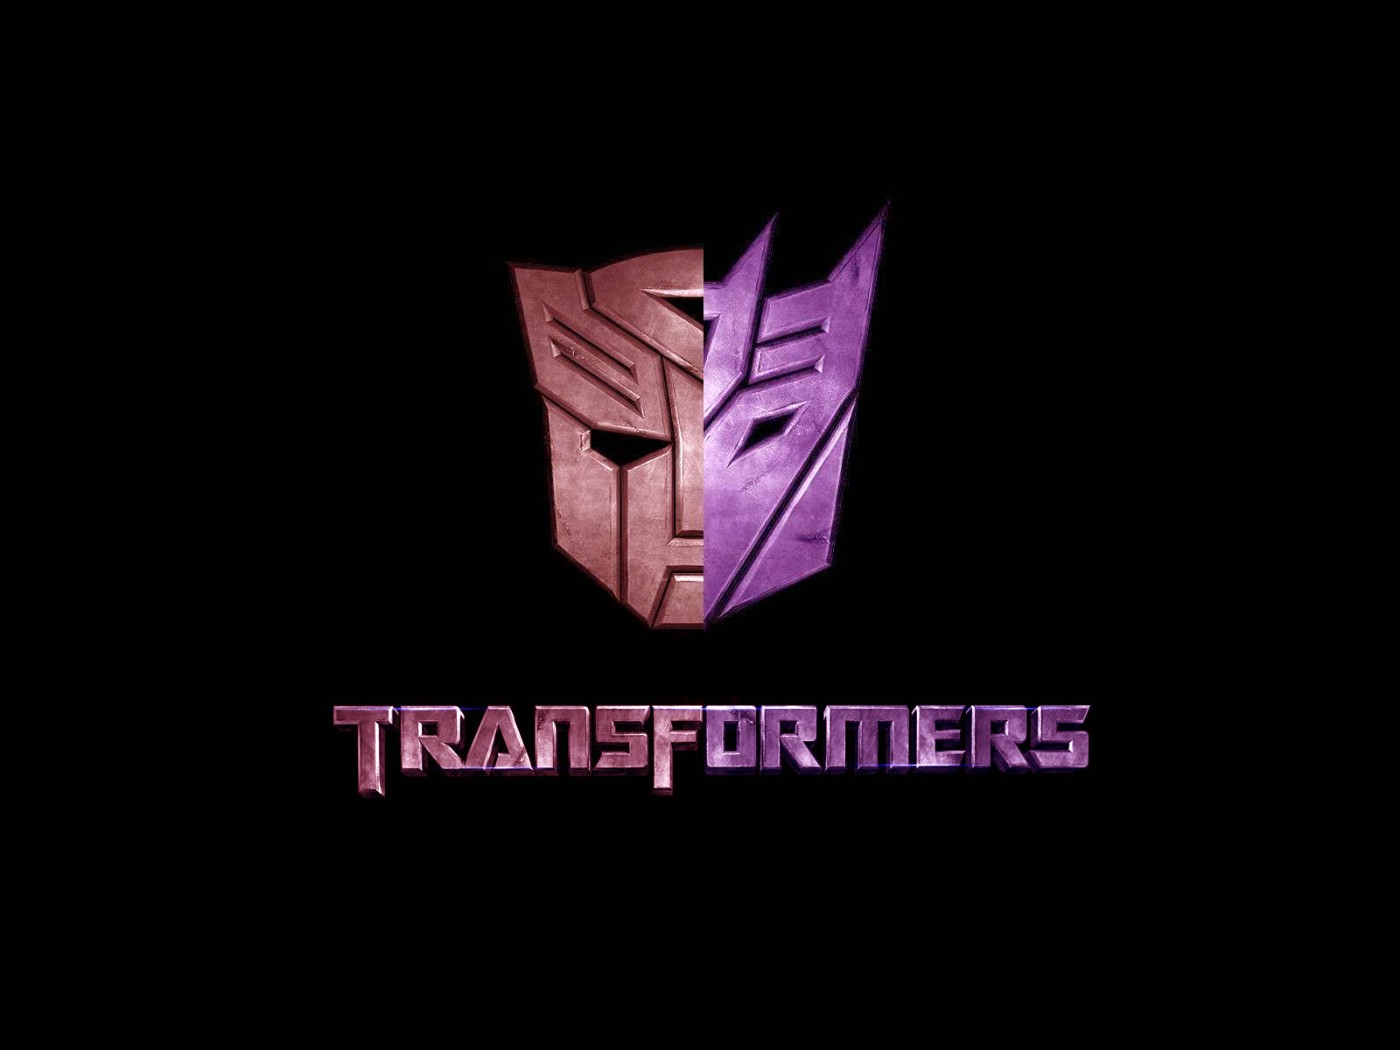 壁纸1400x1050Transformers 1 12壁纸 单个游戏 Transformers 第一辑壁纸 单个游戏 Transformers 第一辑图片 单个游戏 Transformers 第一辑素材 游戏壁纸 游戏图库 游戏图片素材桌面壁纸